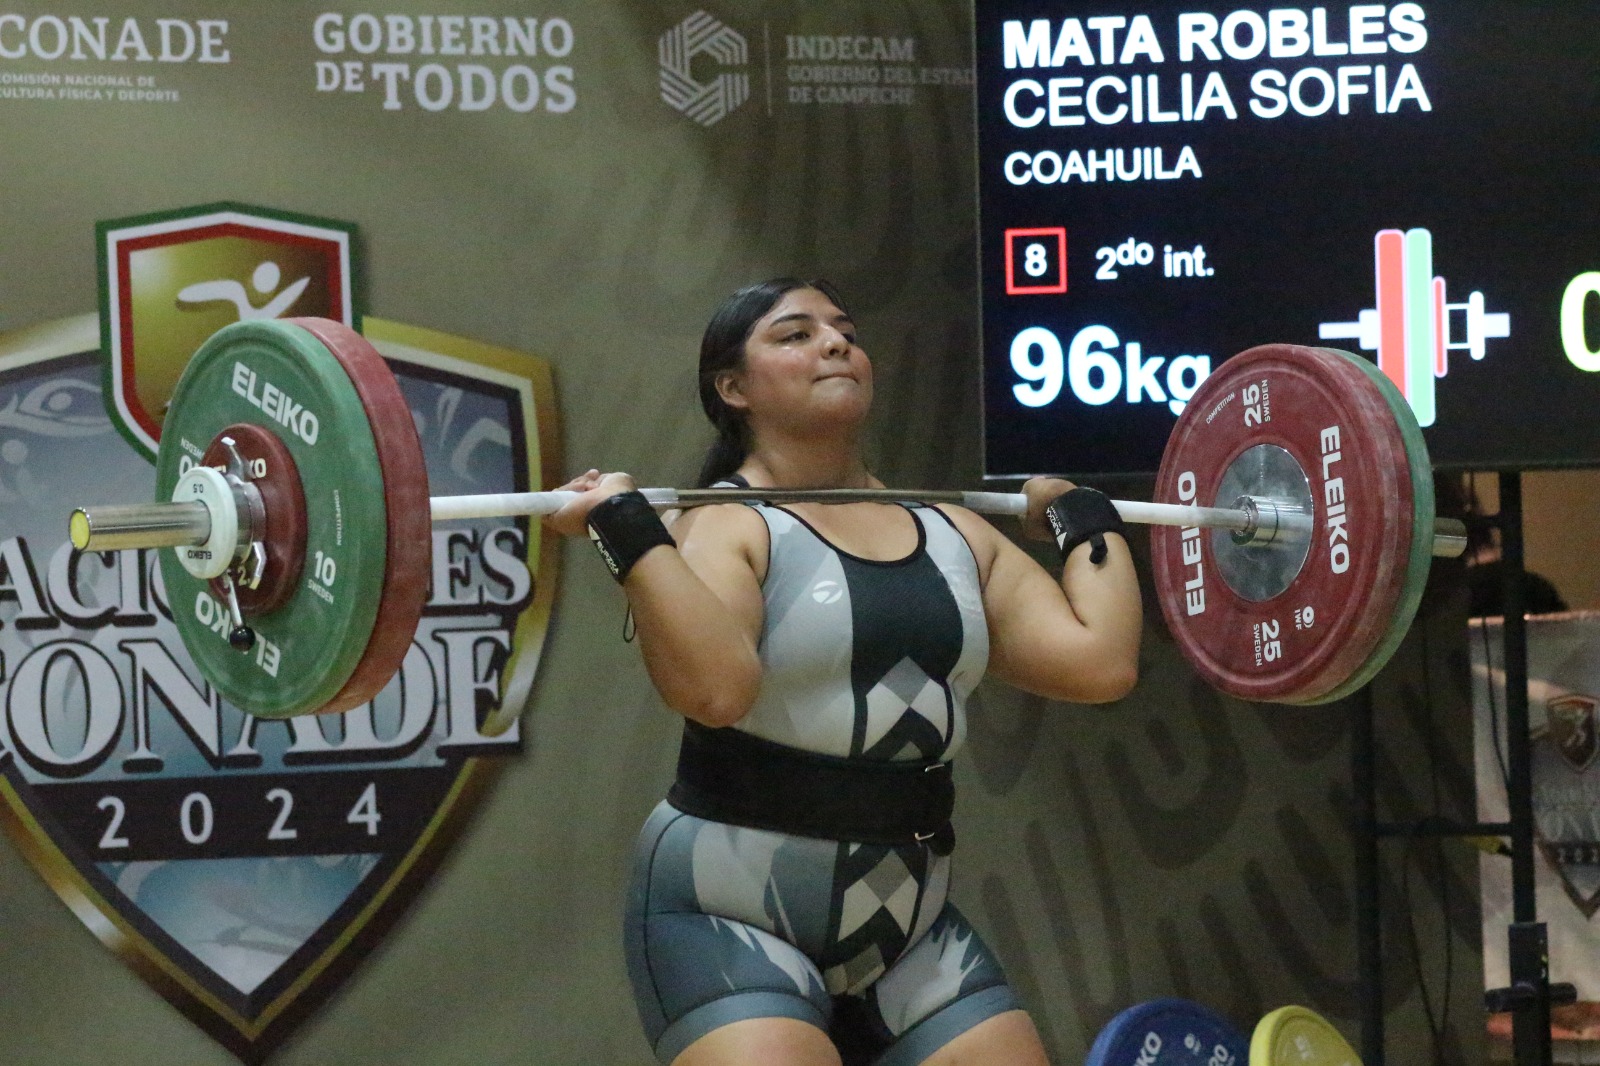 La coahuilense Cecilia Sofía Mata Robles tomó parte en la categoría Sub-20, teniendo rivales de alto calibre en la fase nacional. (Cortesía INEDEC)